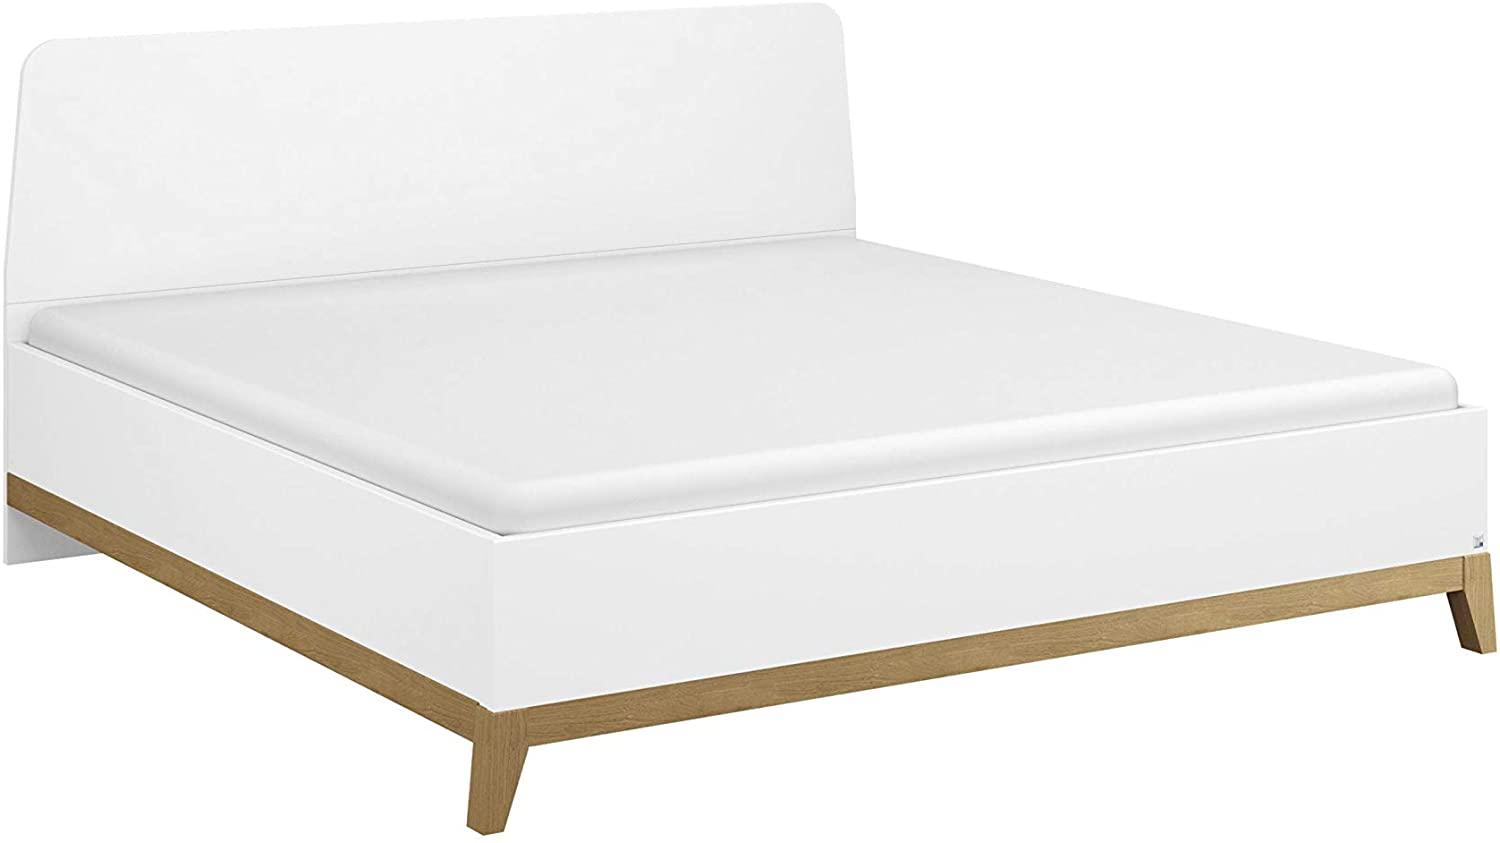 Rauch Möbel Carlsson Bett Doppelbett Futonbett in weiß, Absetzungen/Füße Eiche massiv, Liegefläche 180x200 cm, Gesamtmaße BxHxT 189x97x207 cm Bild 1